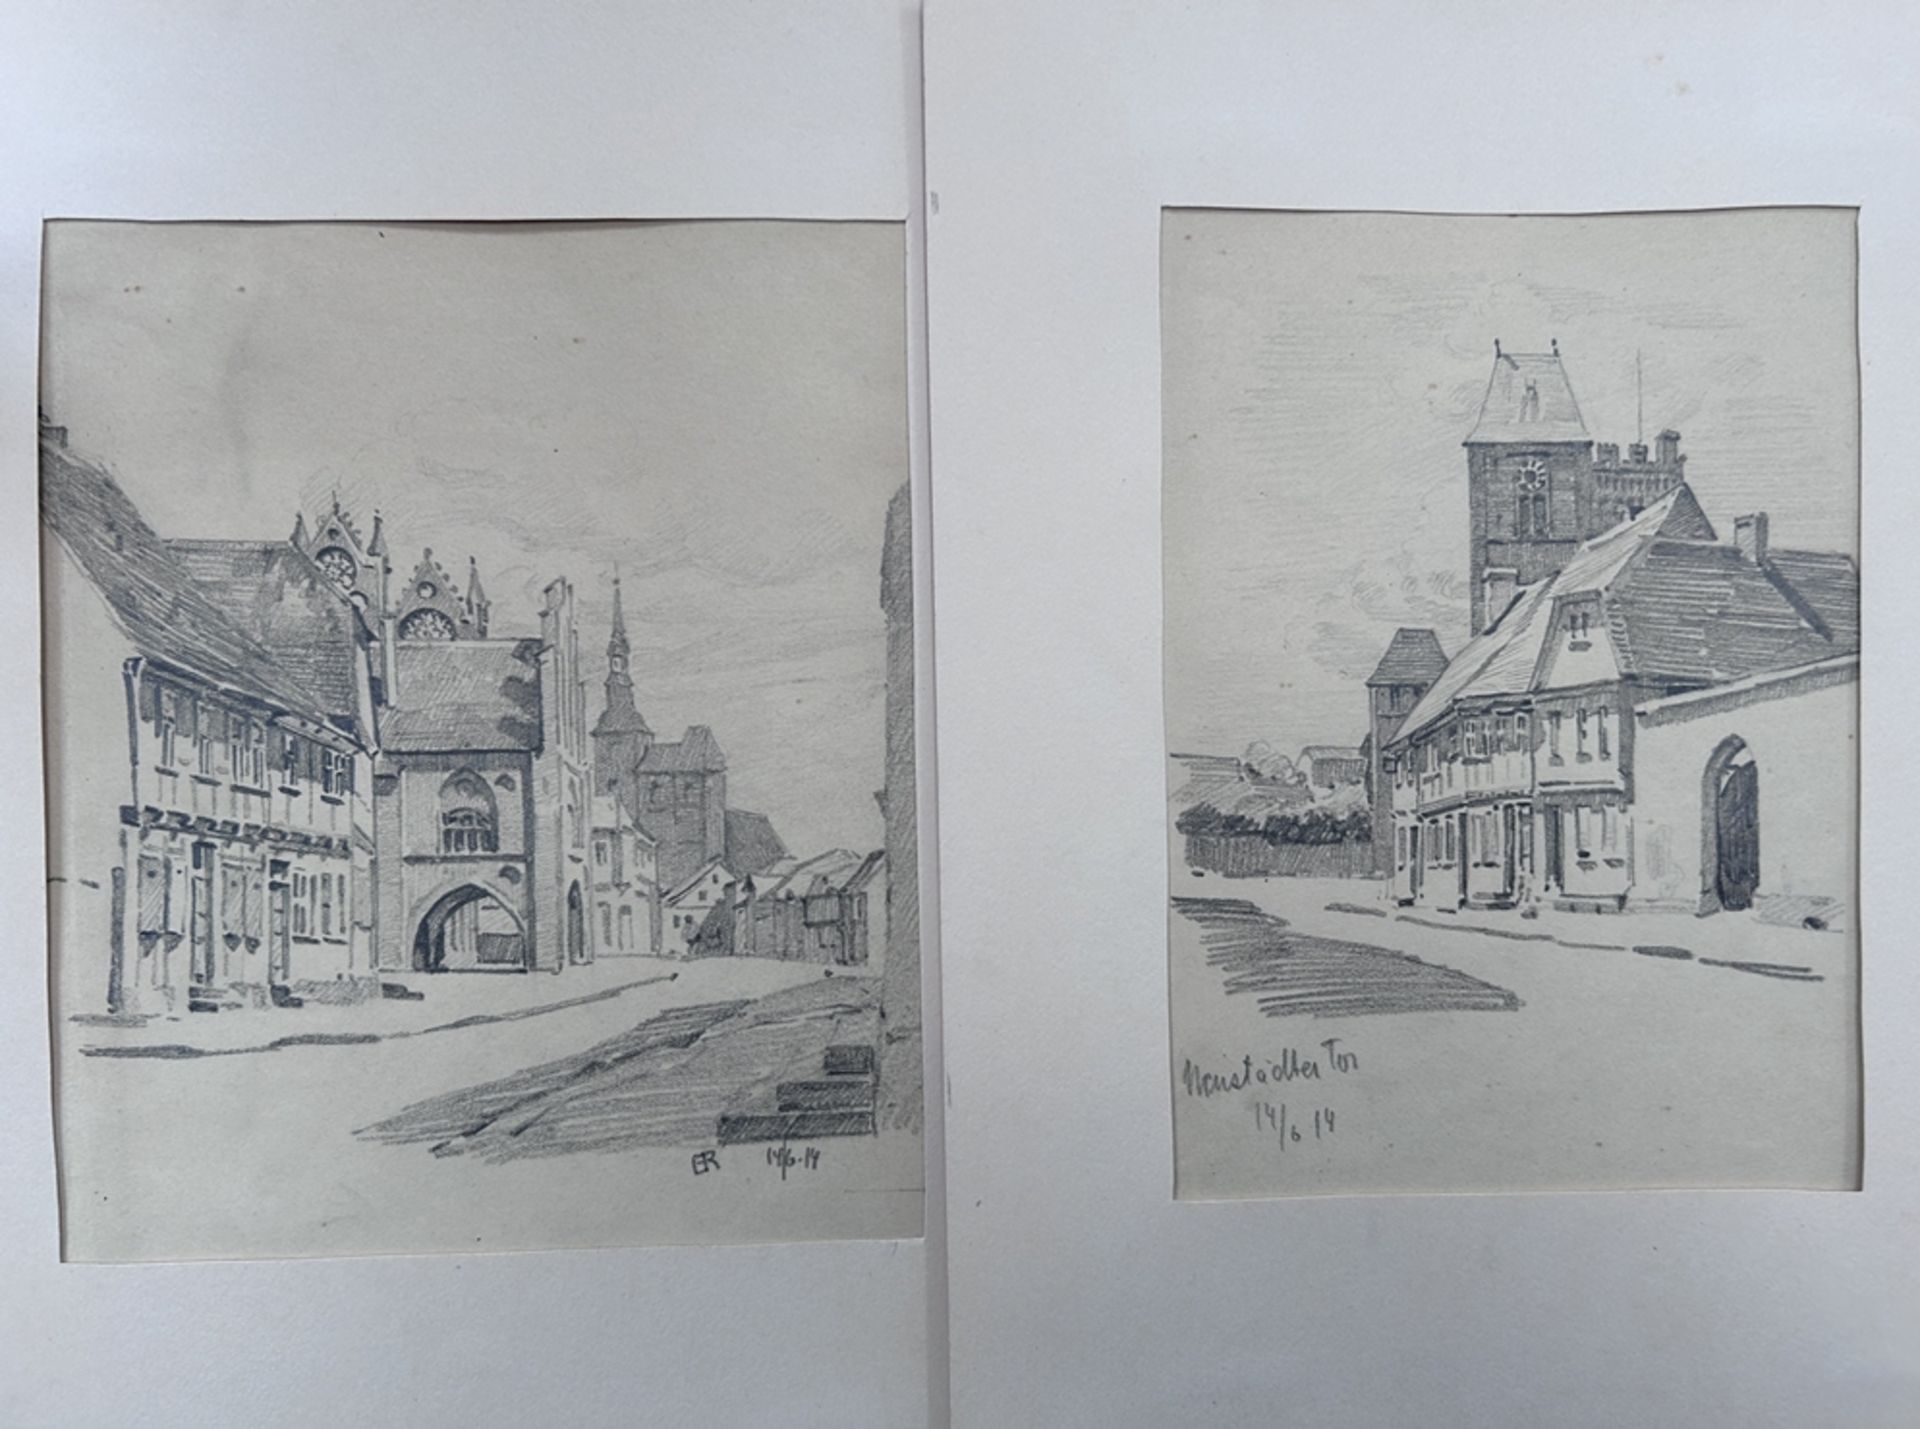 ER, 1914, 2x Stiftzeichnungen, wohl beide Gießen, 1x Neustädter Tor in PP., BG je. 30x23 cm